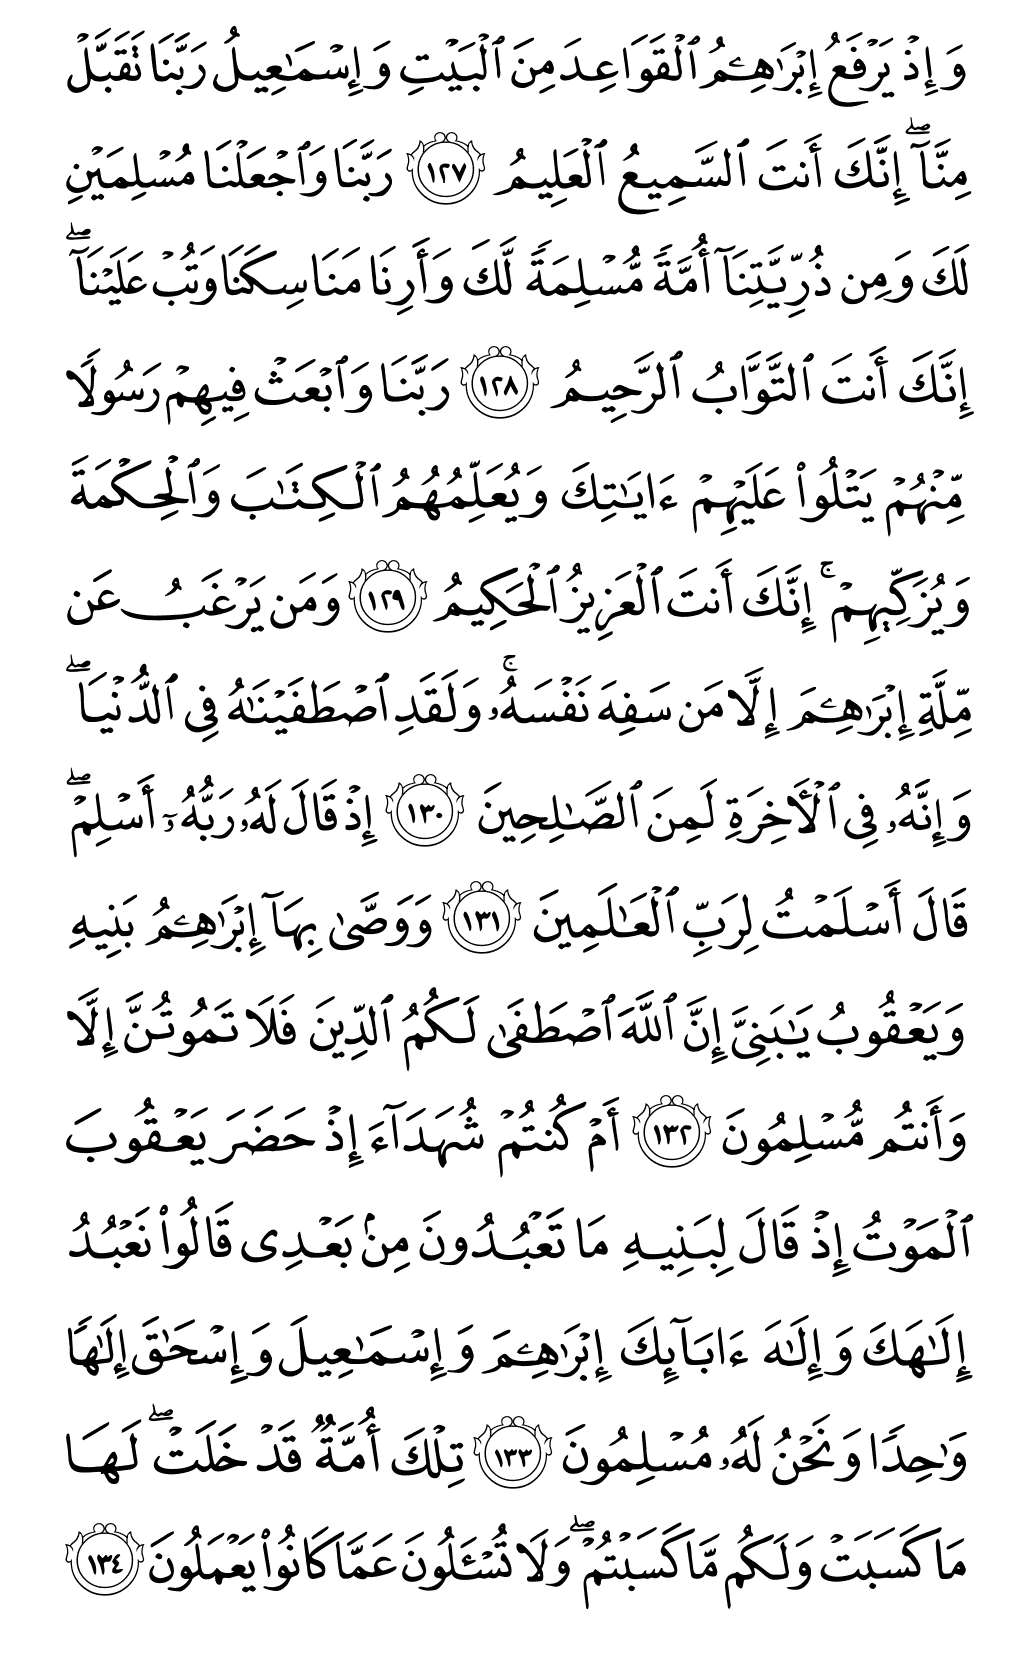 الصفحة رقم 20 من القرآن الكريم